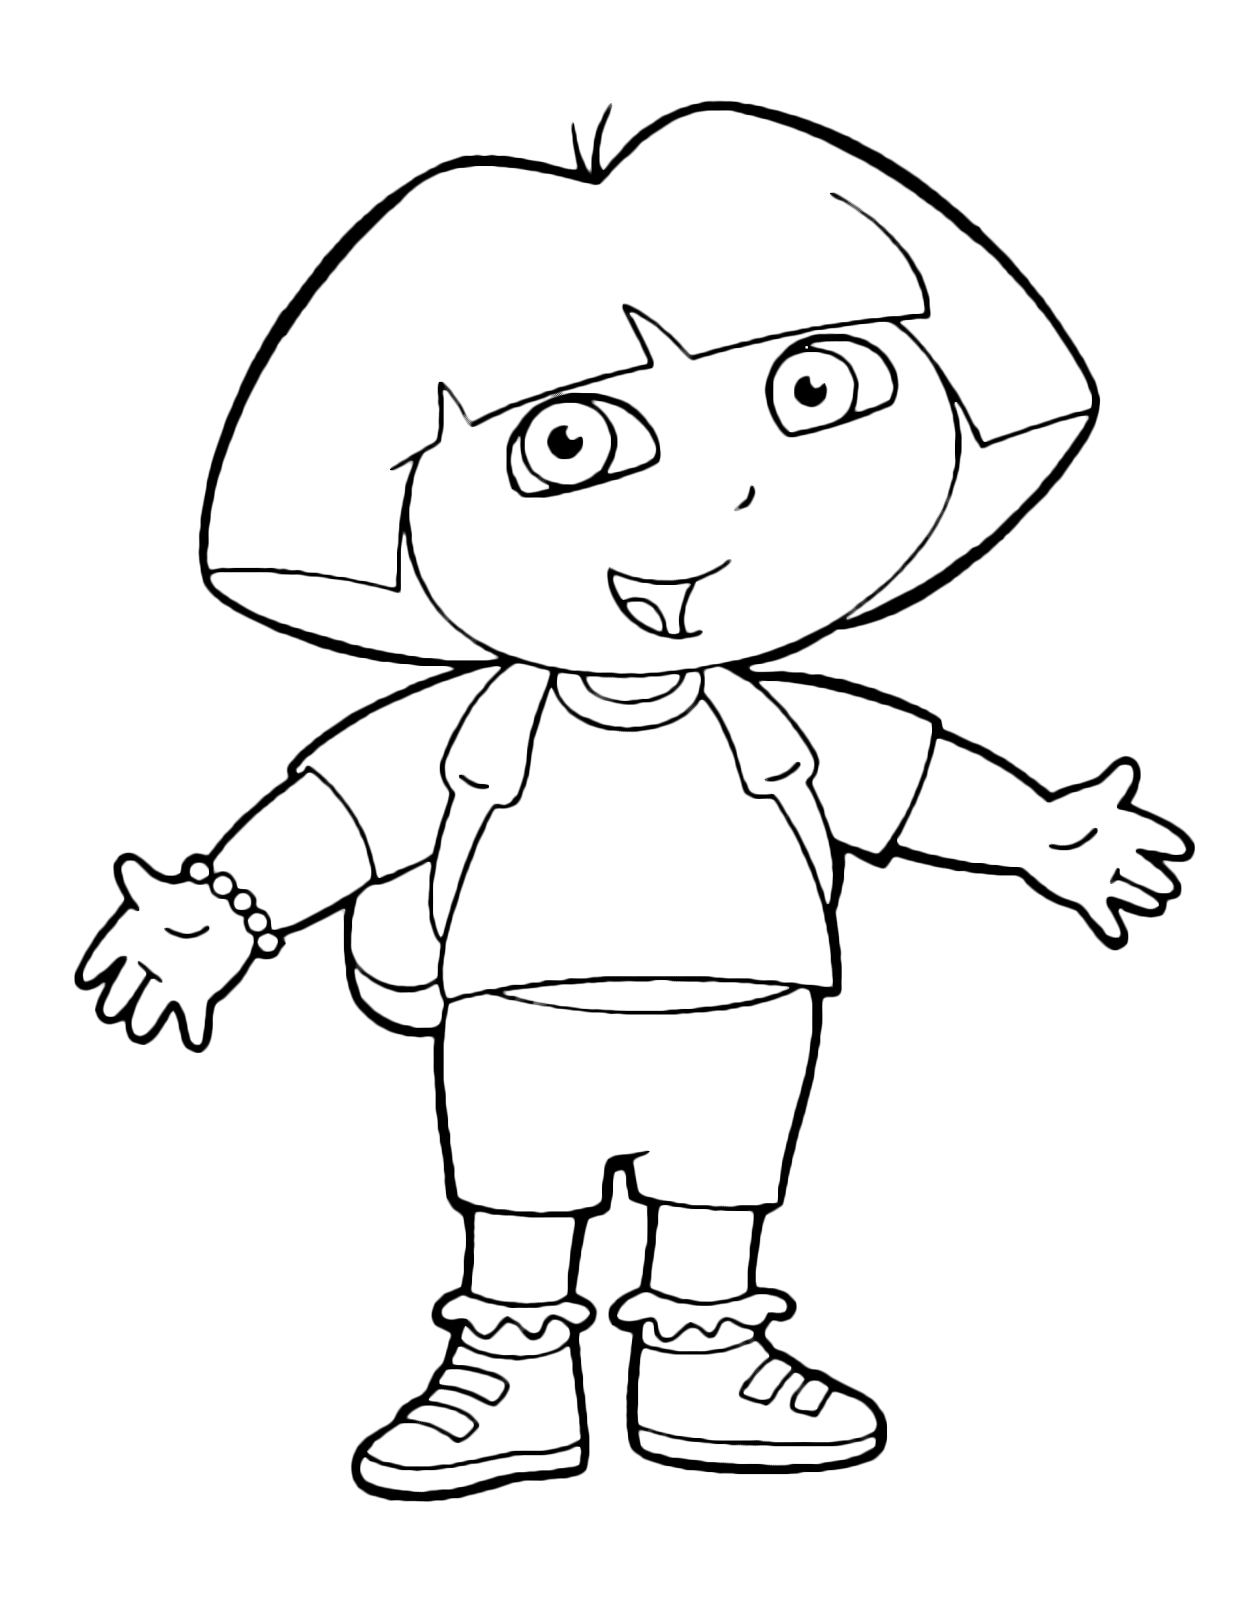 Dora l'esploratrice - Dora in piedi con le braccia aperte